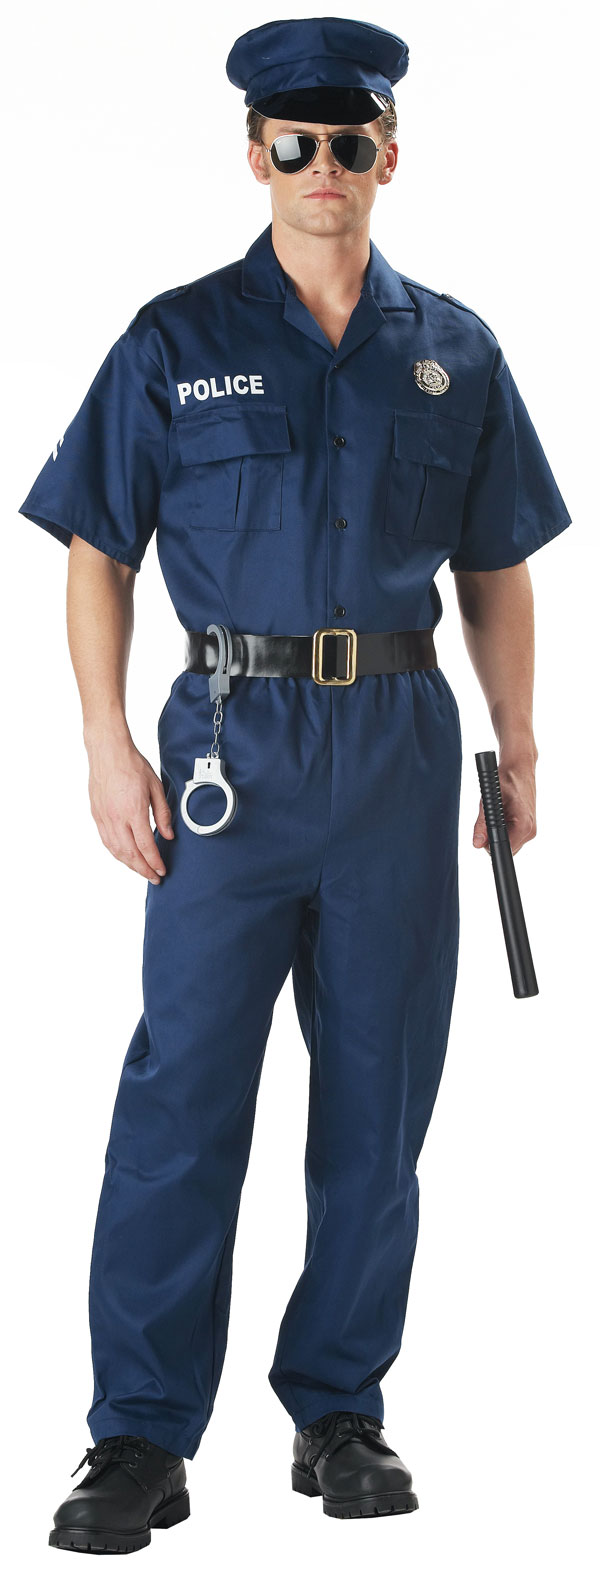 00923-Adult-Police-Costume-large.jpg